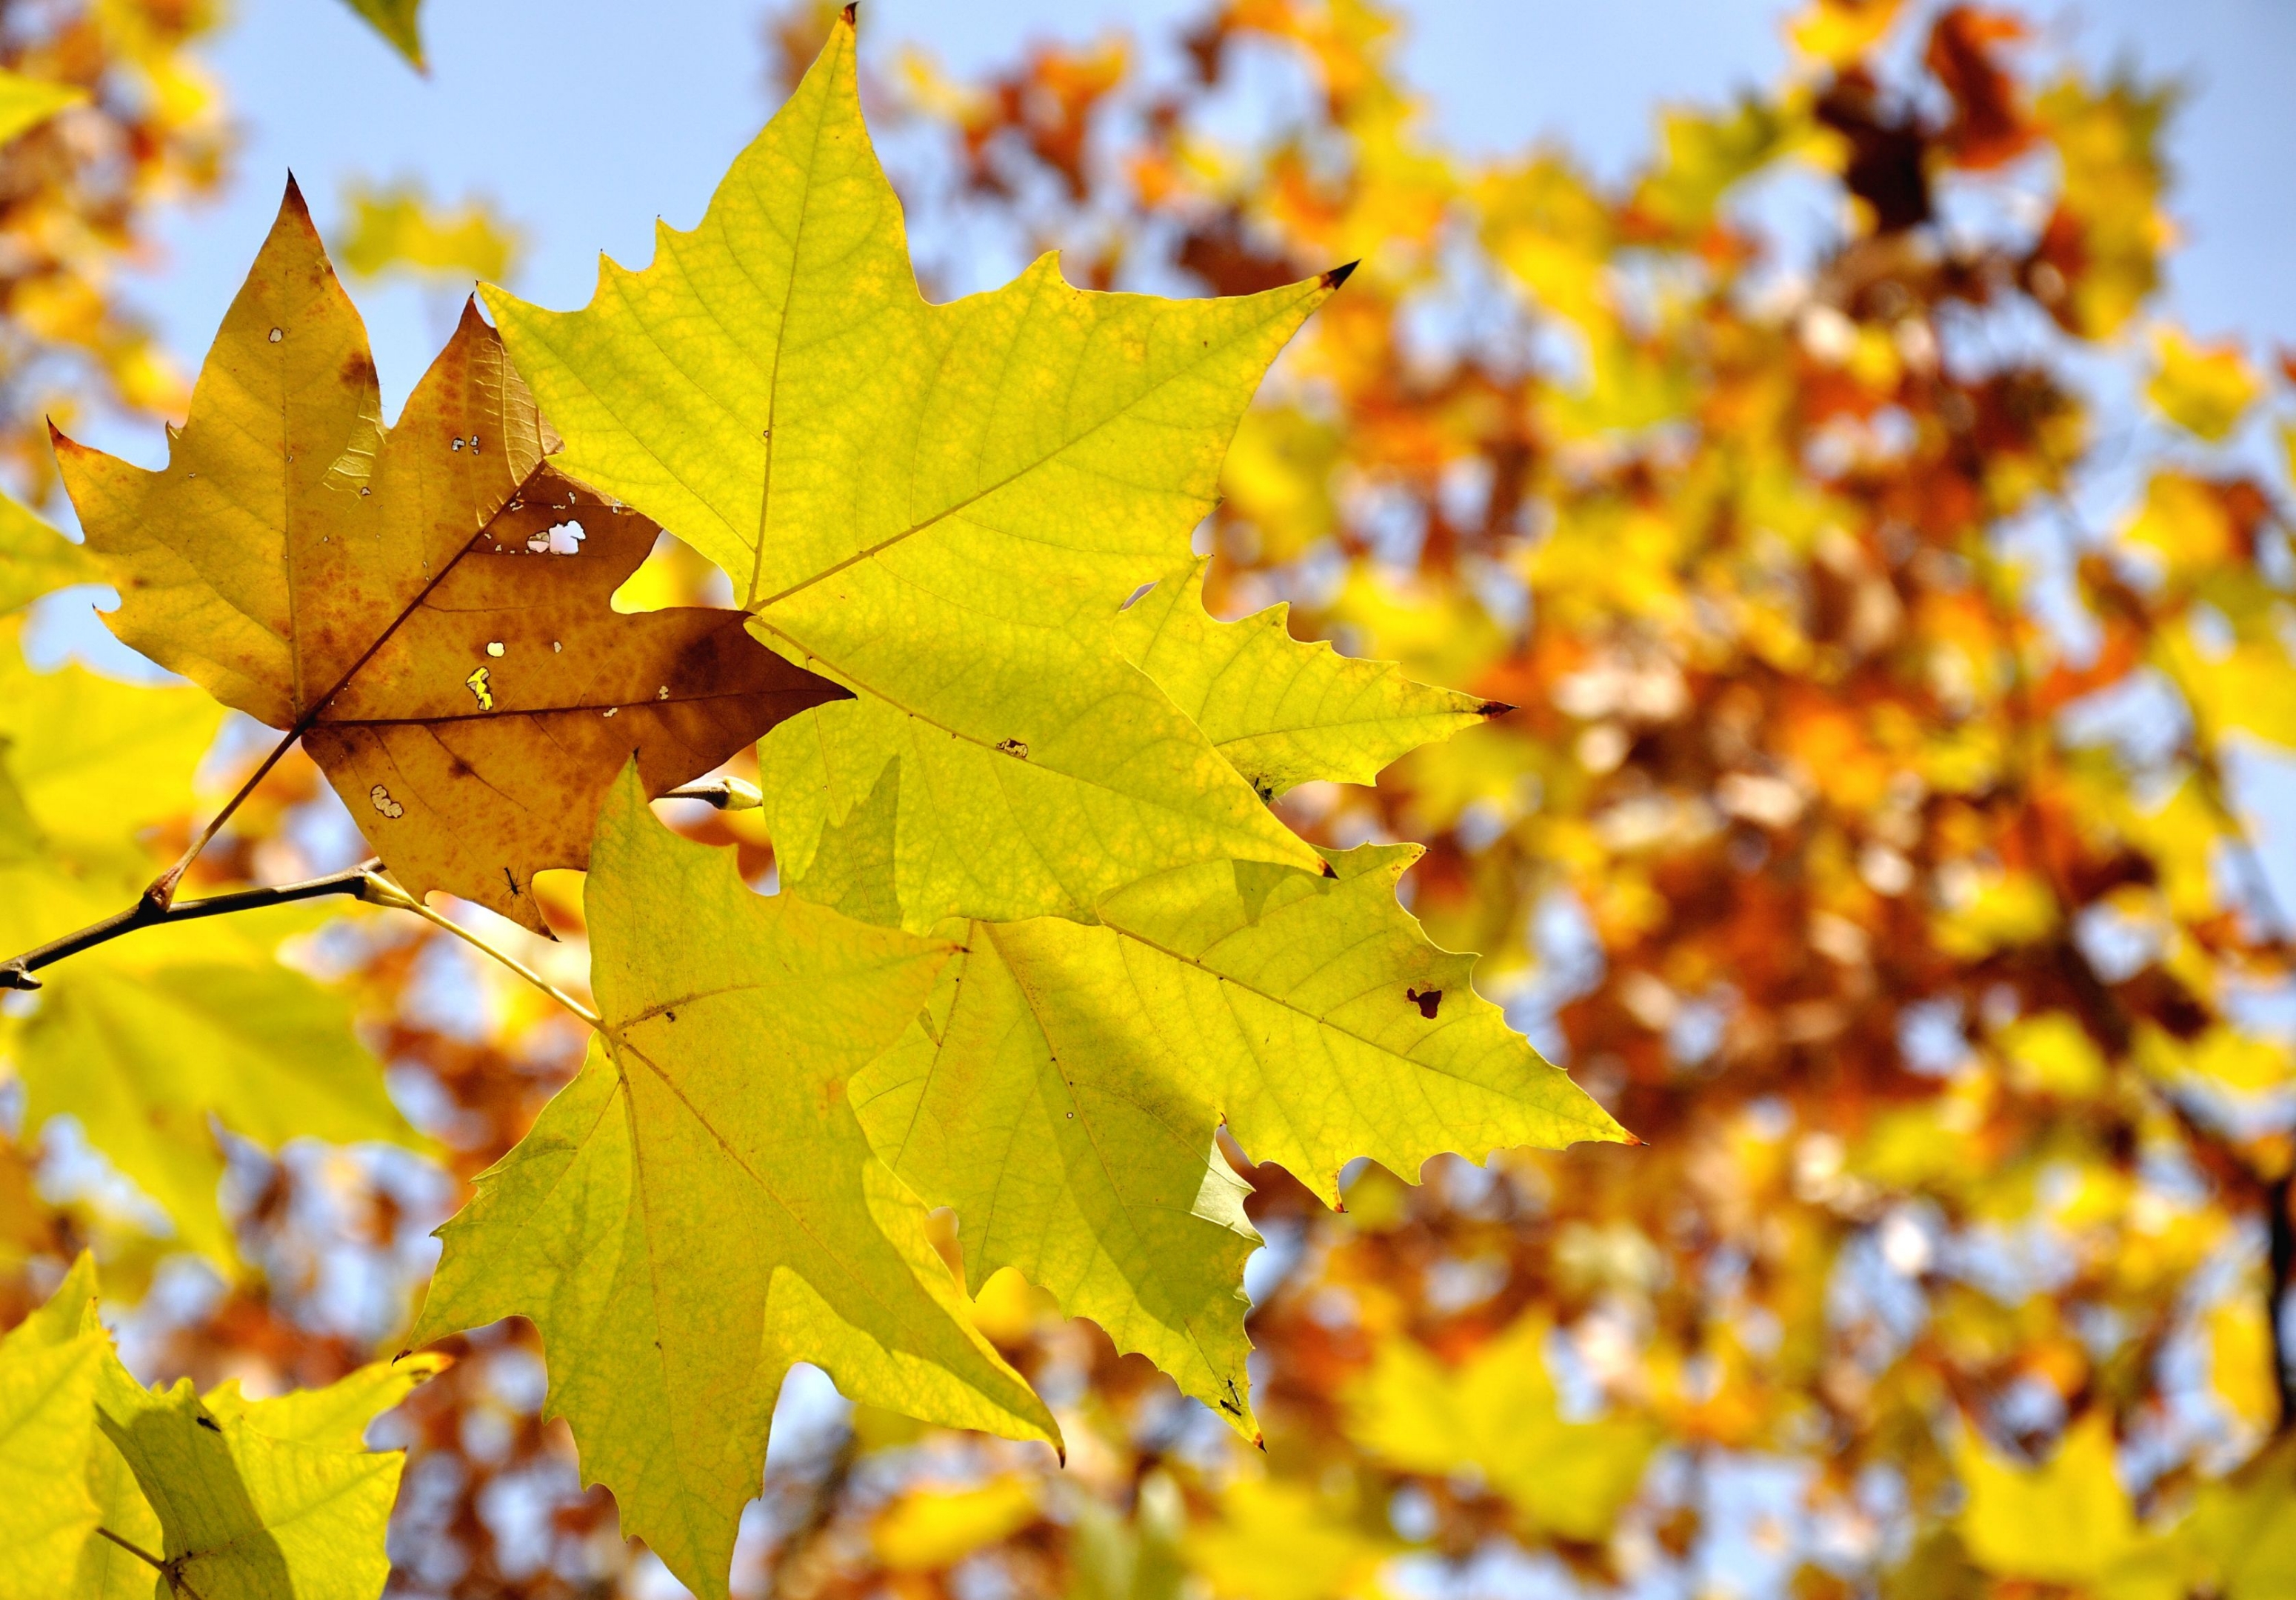 秋天的梧桐树叶开始飘落,梧桐树叶飘落的姿势很美,一阵秋风吹来